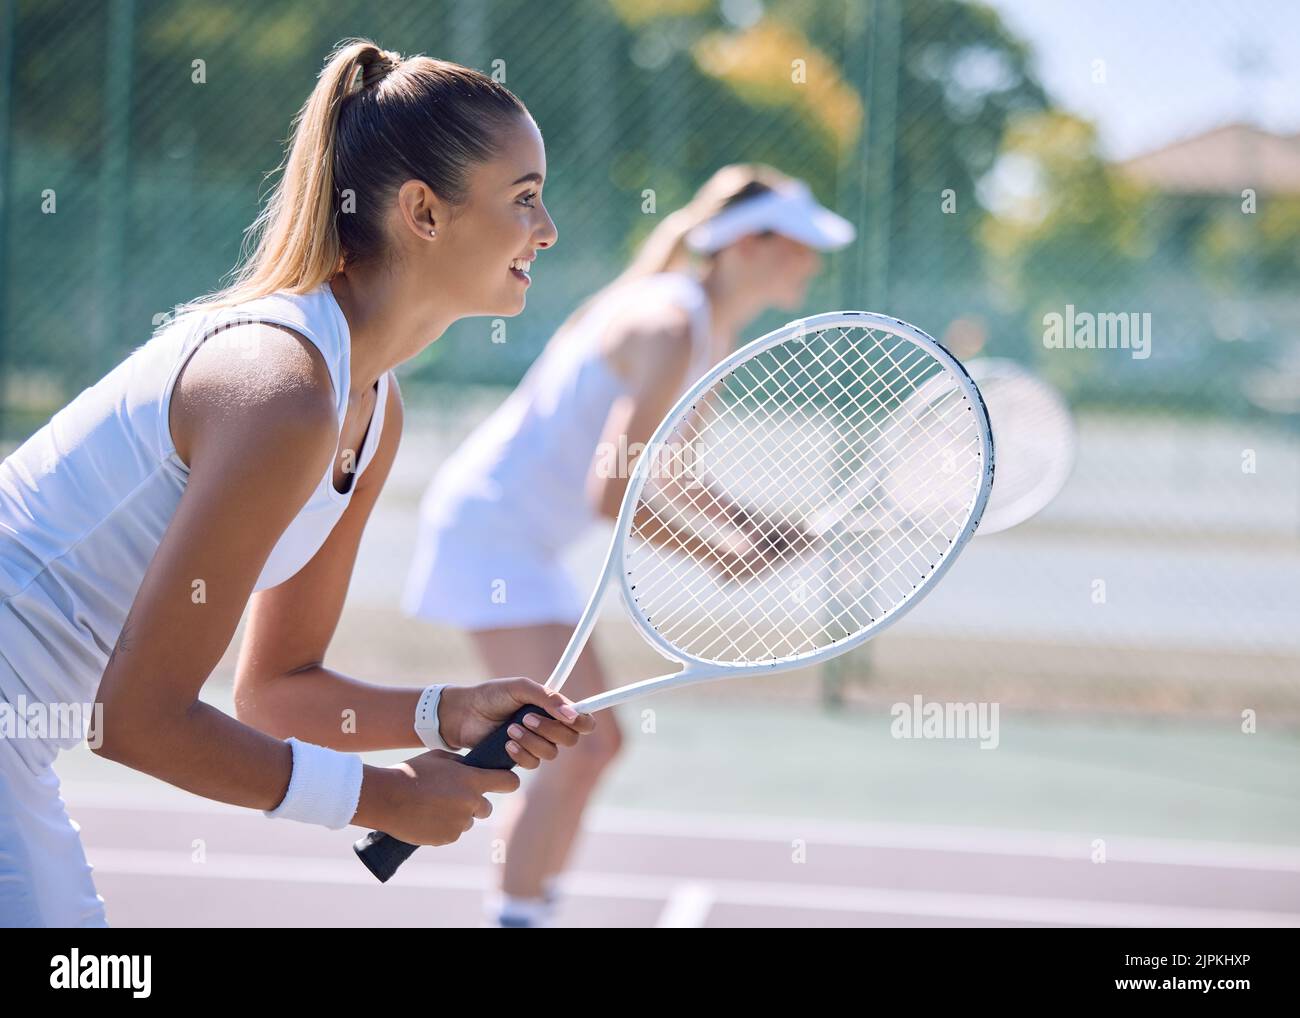 Jugadora de tenis o deportiva con raqueta y equipo deportivo jugando un partido en la cancha de deporte al aire libre. Niña en forma disfrutando de la manía, el ejercicio o. Foto de stock